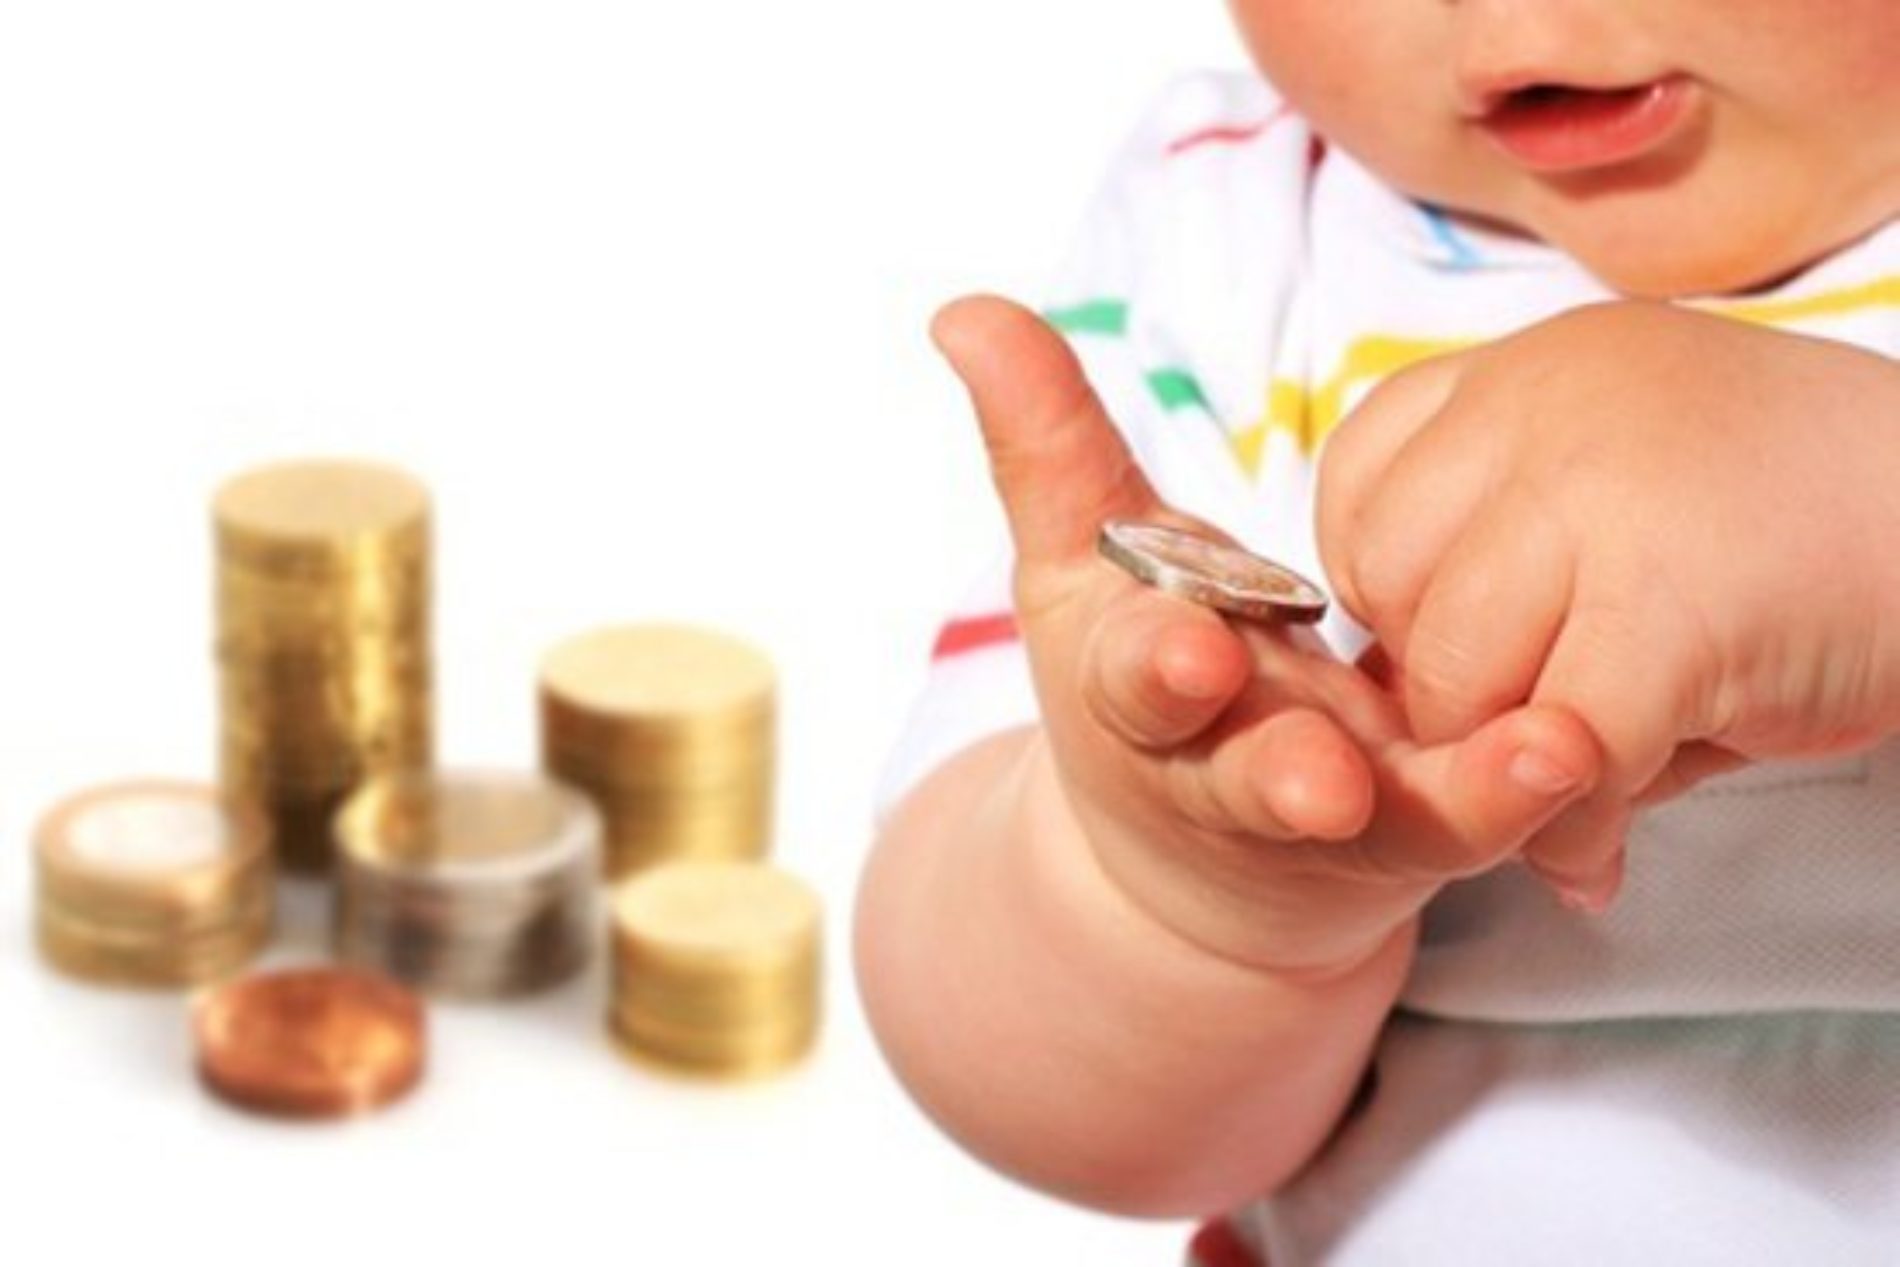 Il Bonus Bebè da mille euro: i criteri e le modalità diffuse da parte del comune